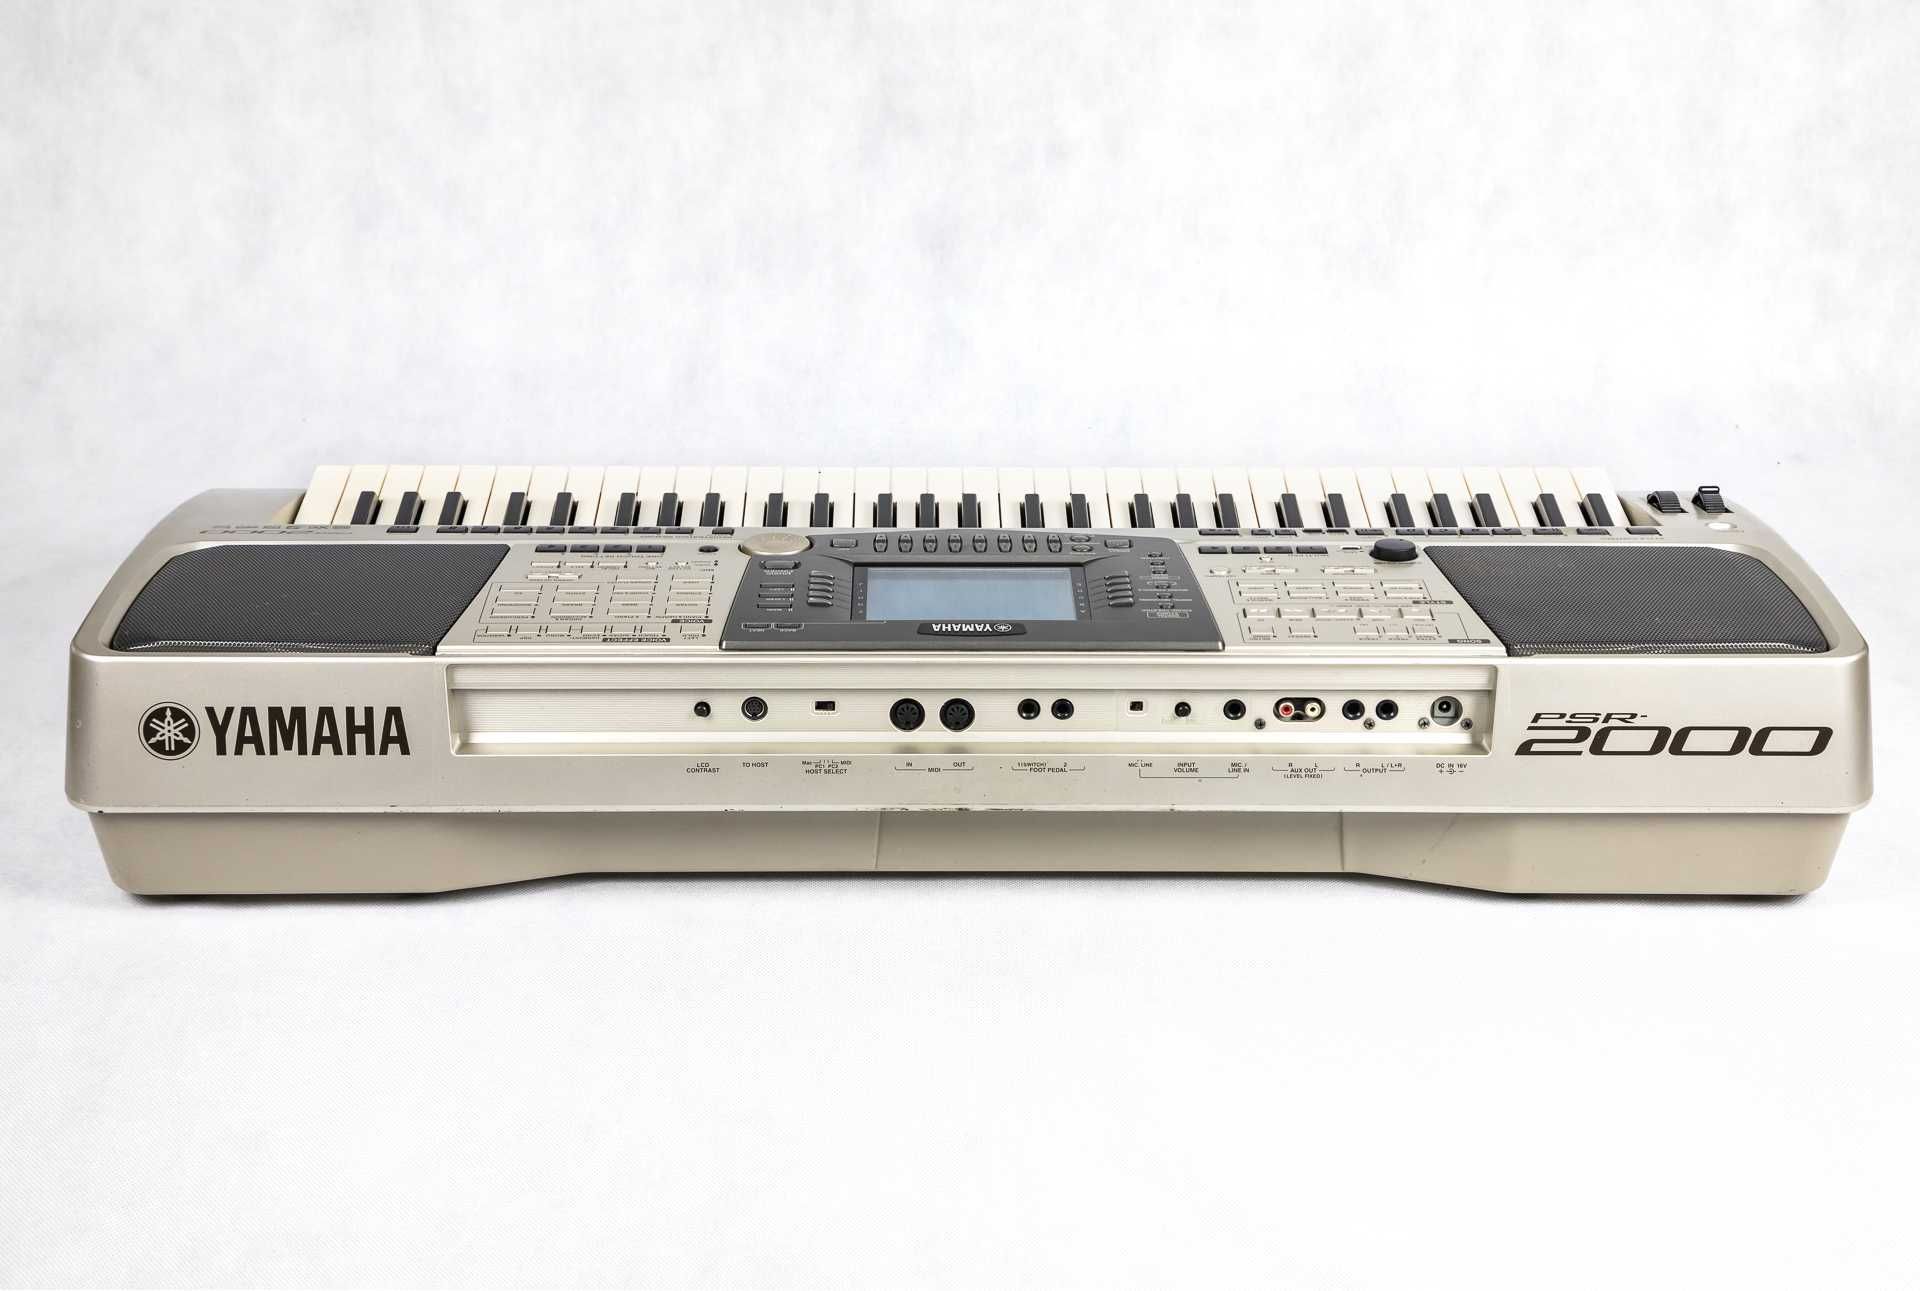 Yamaha PSR 2000 - keyboard